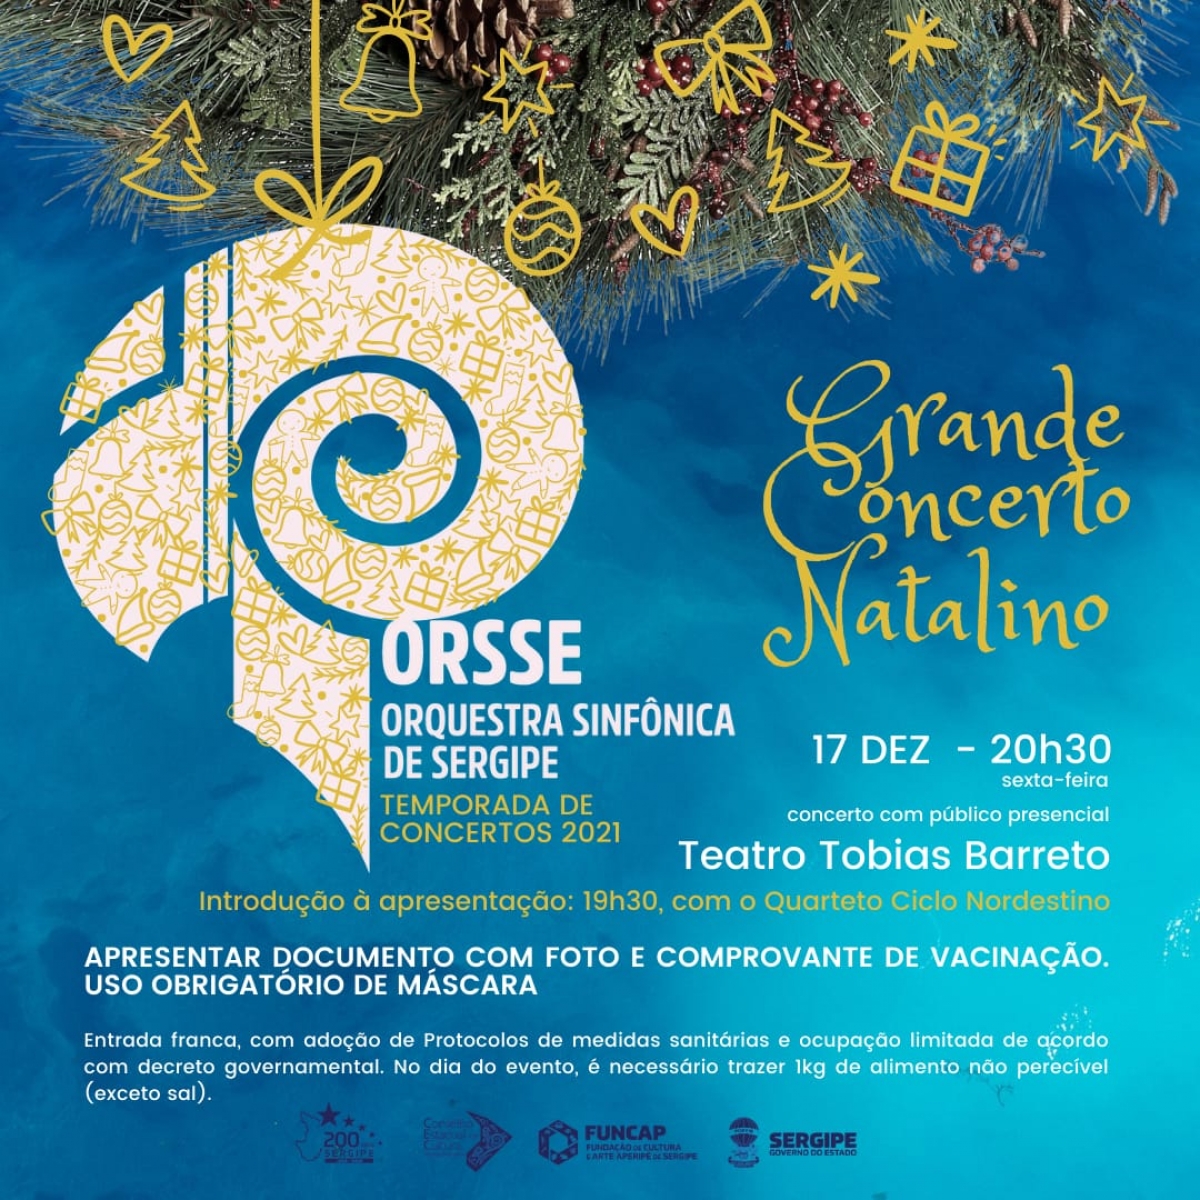 Grande Concerto Natalino da Orsse (Imagem: Divulgação)